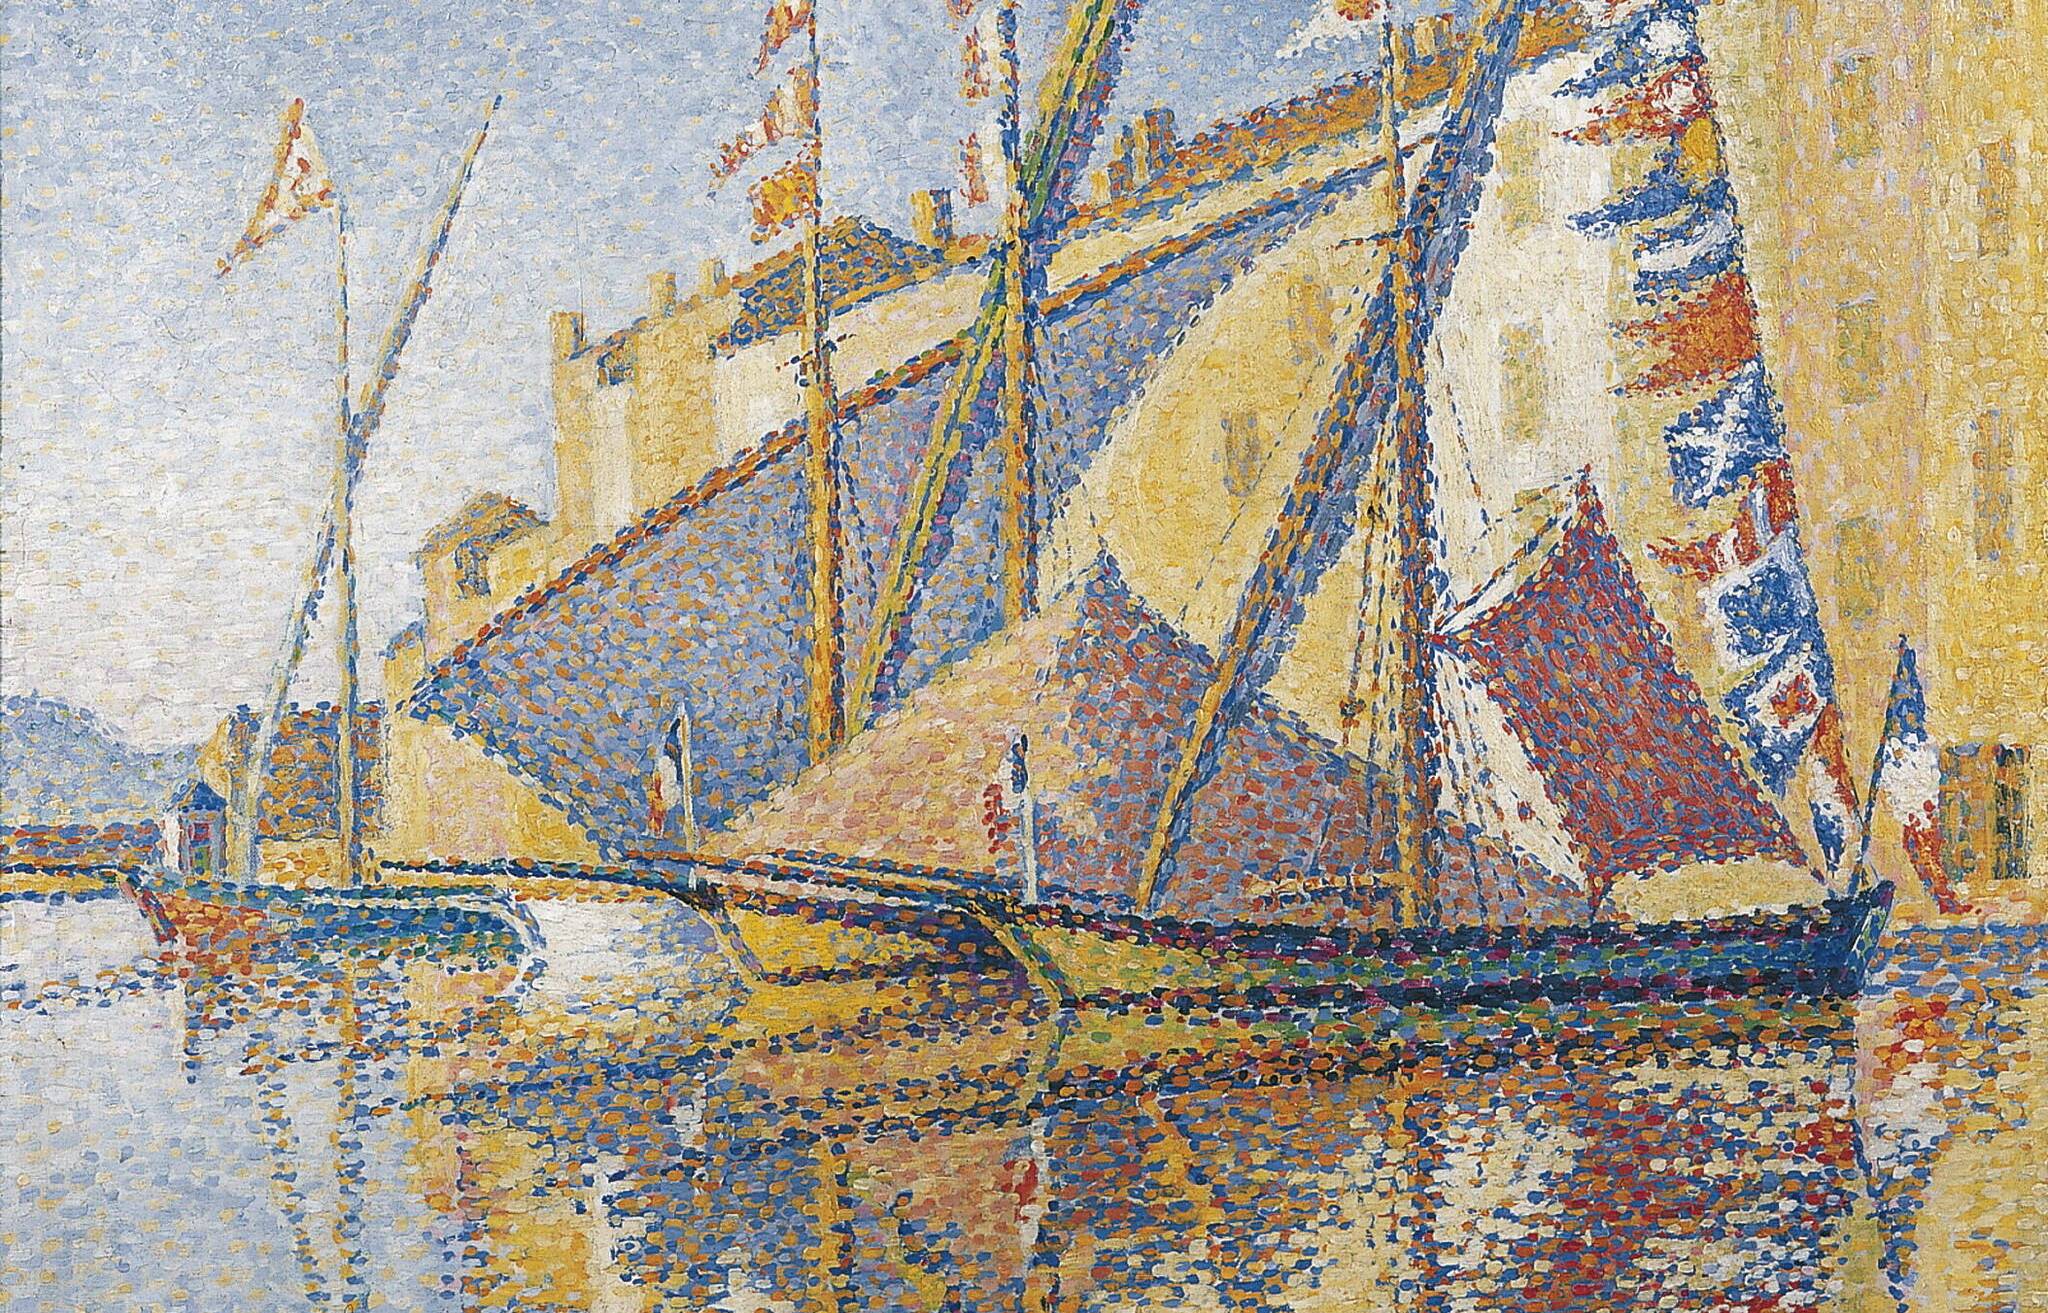  Paul Signac, Segelboote im Hafen von Saint-Tropez, 1893. 